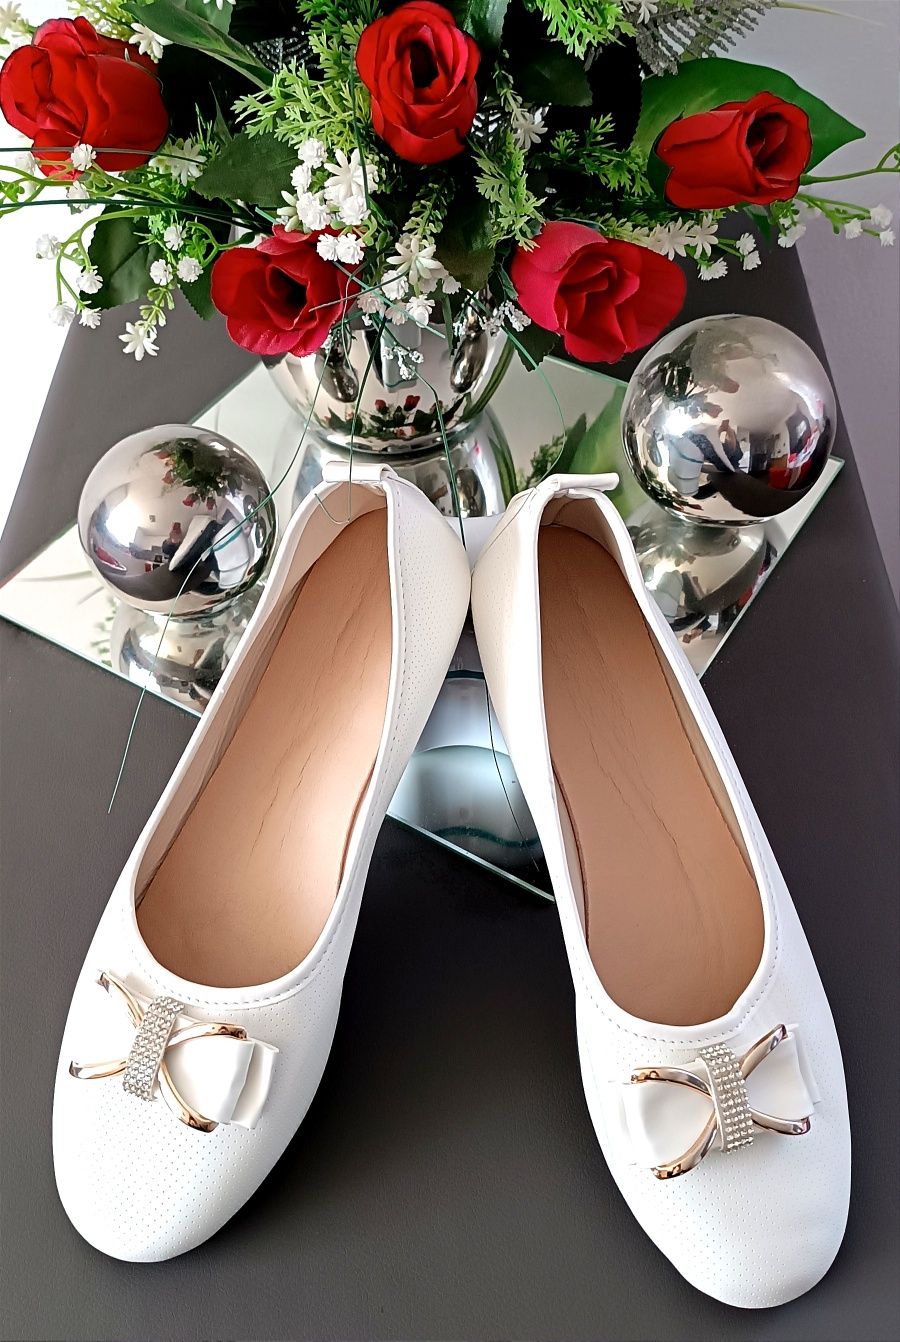 NOWE buty komunia/ślub śnieżna biel kokarda kryształki dł.wkł. 25,5 cm